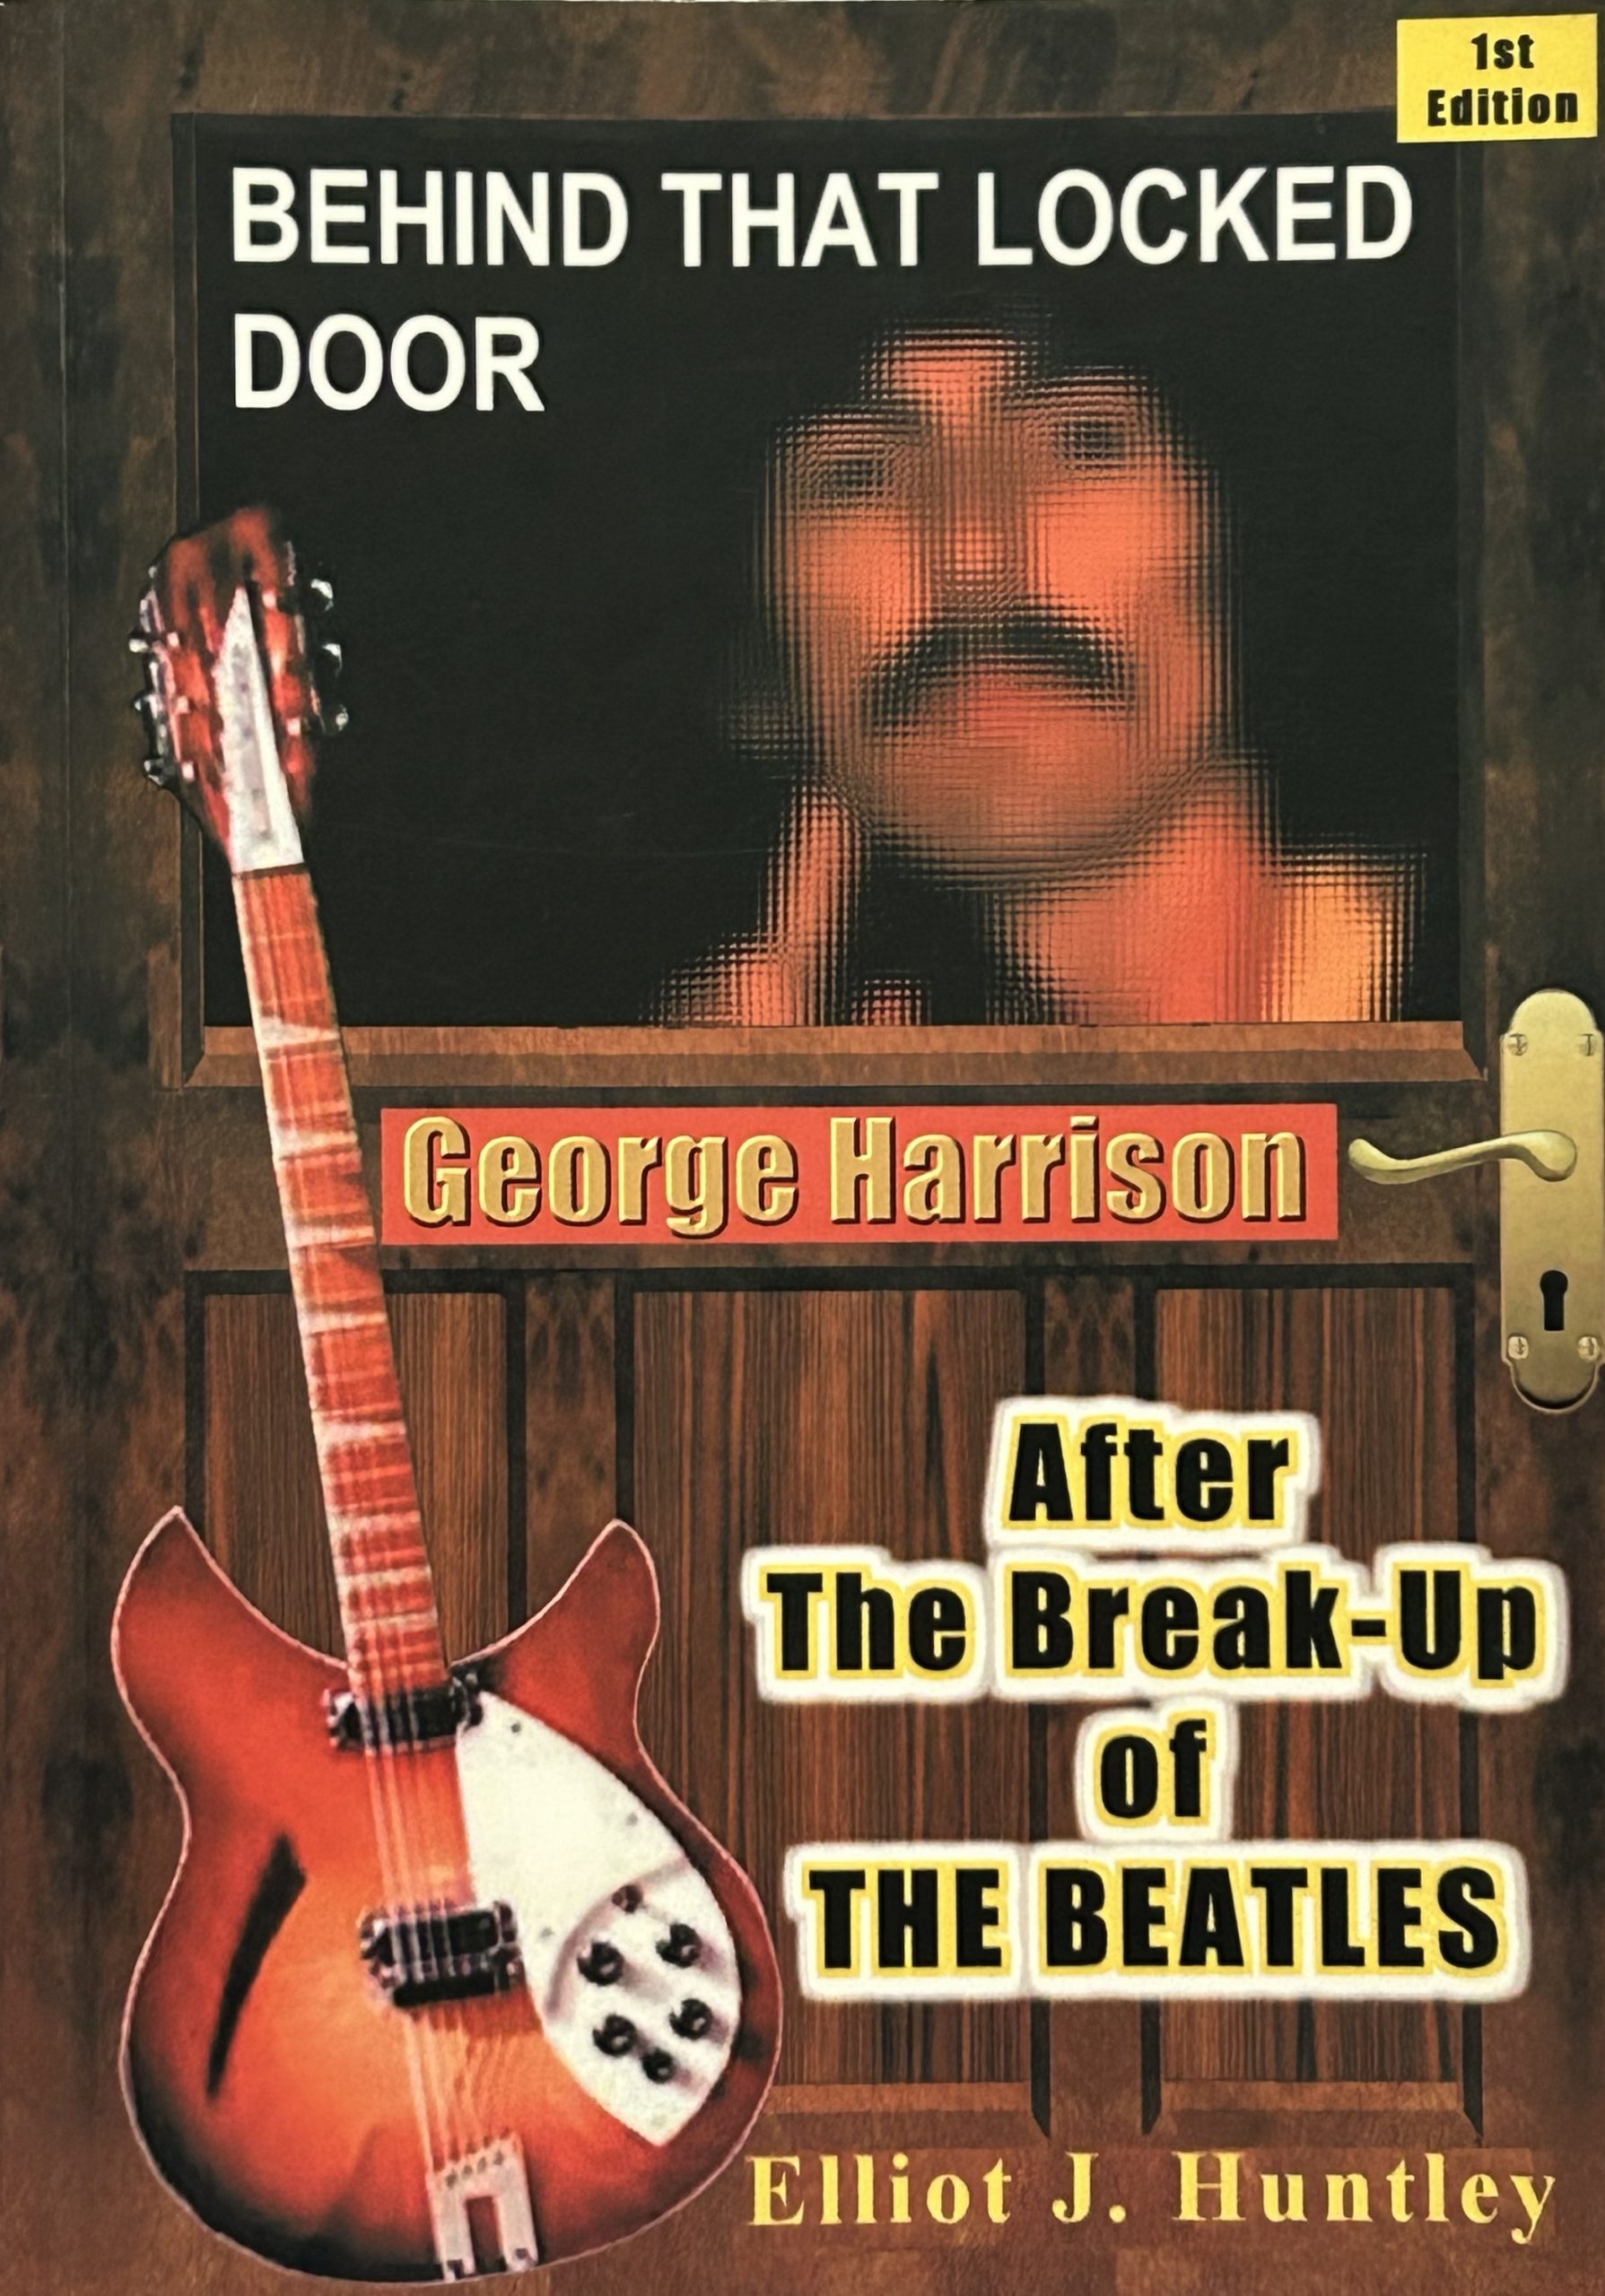 Behind That Locked Door: George Harrison - After the Break-up of the Beatles by Elliot J. Huntley